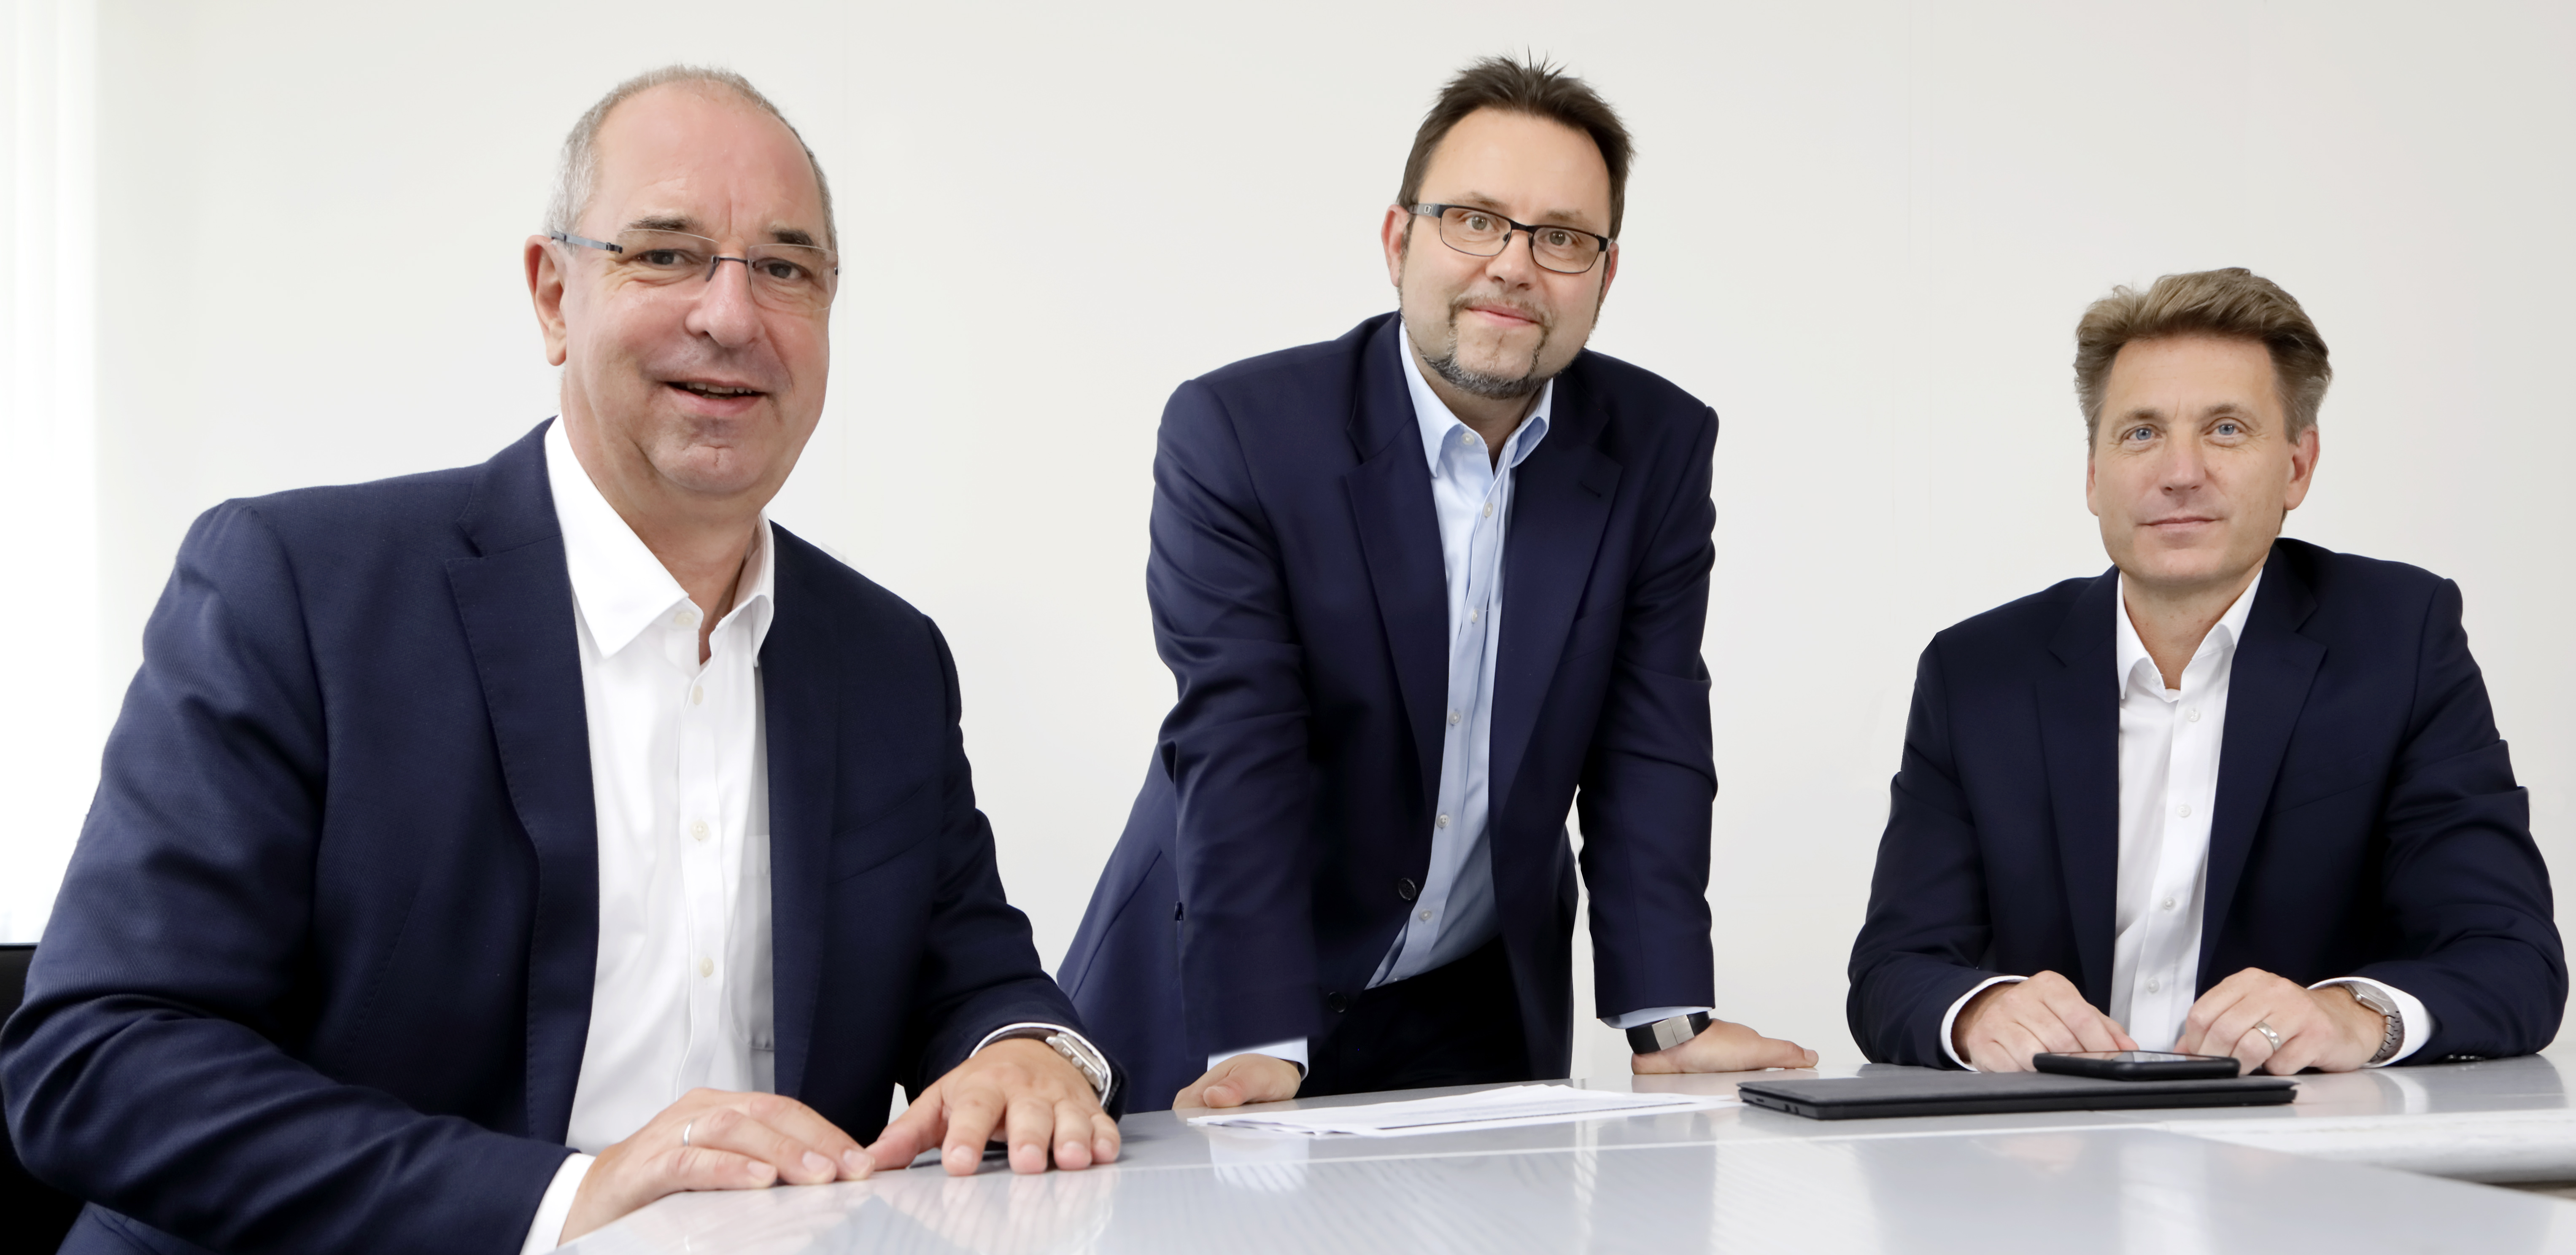 Von links zu sehen: Kai Knickmann (CEO), Dr. Tino Naumann (CSO), Jörg Schwerak (CTO)